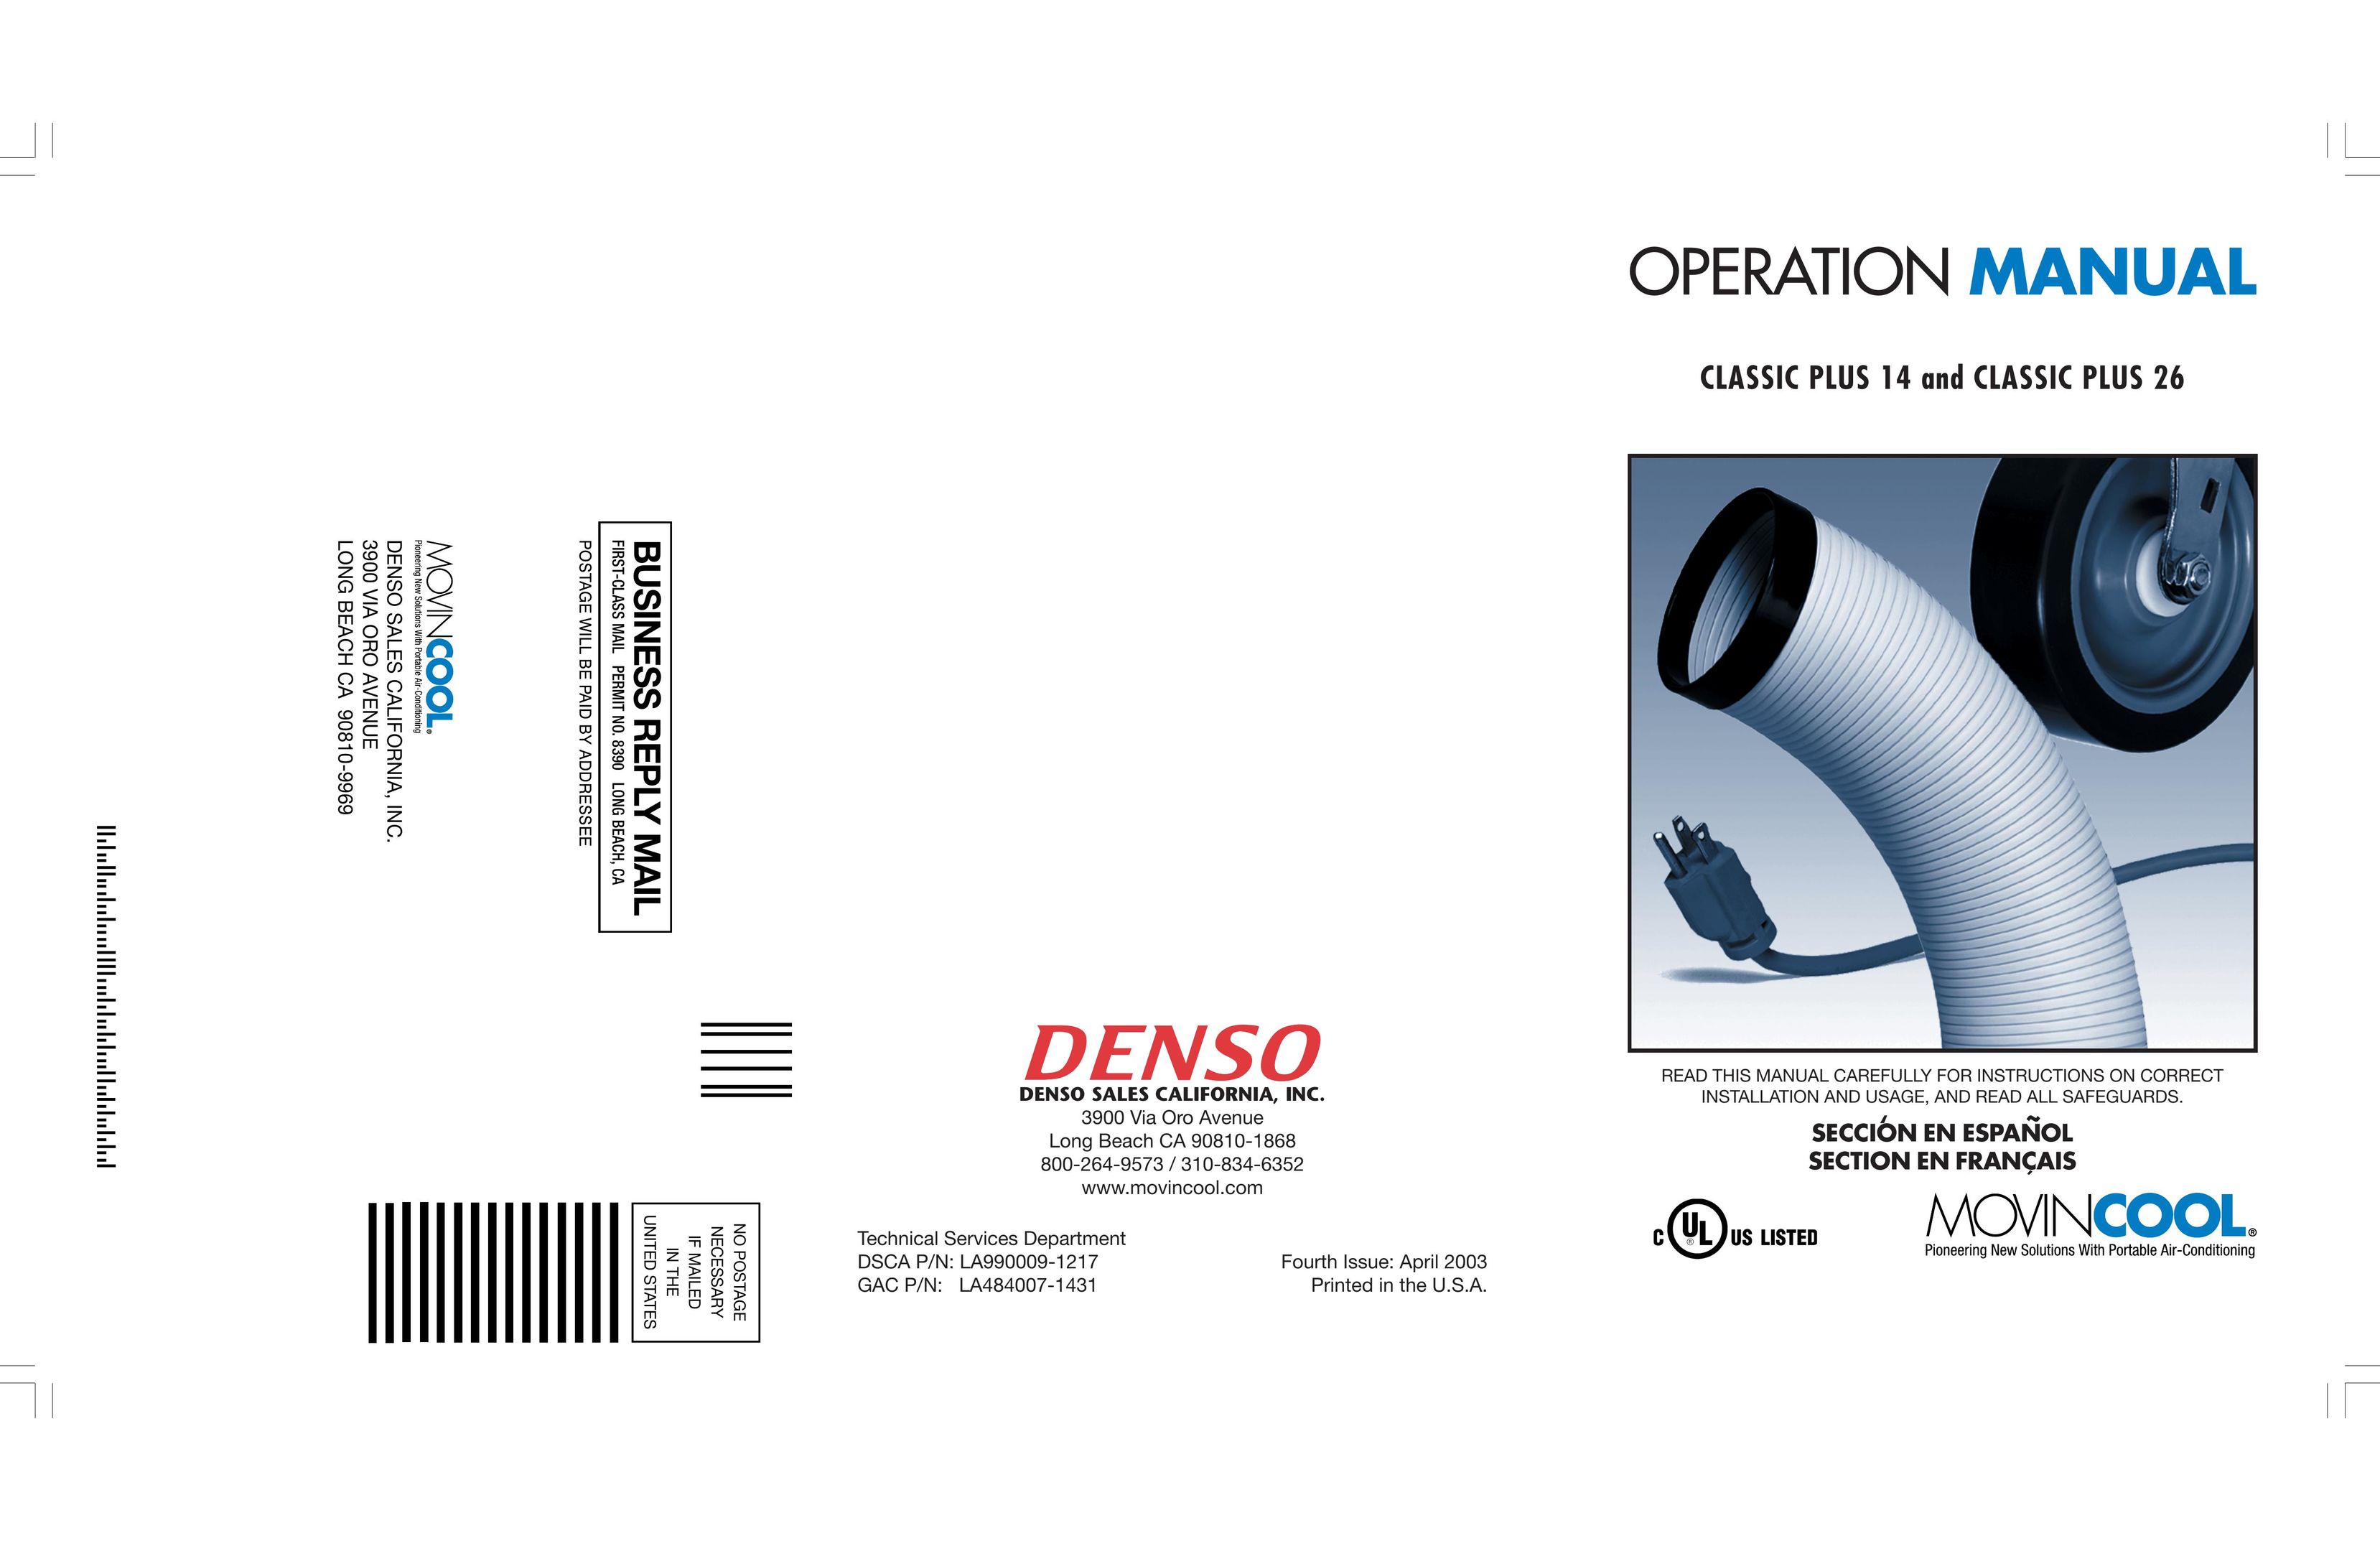 Denso CLASSIC PLUS 26 Air Conditioner User Manual